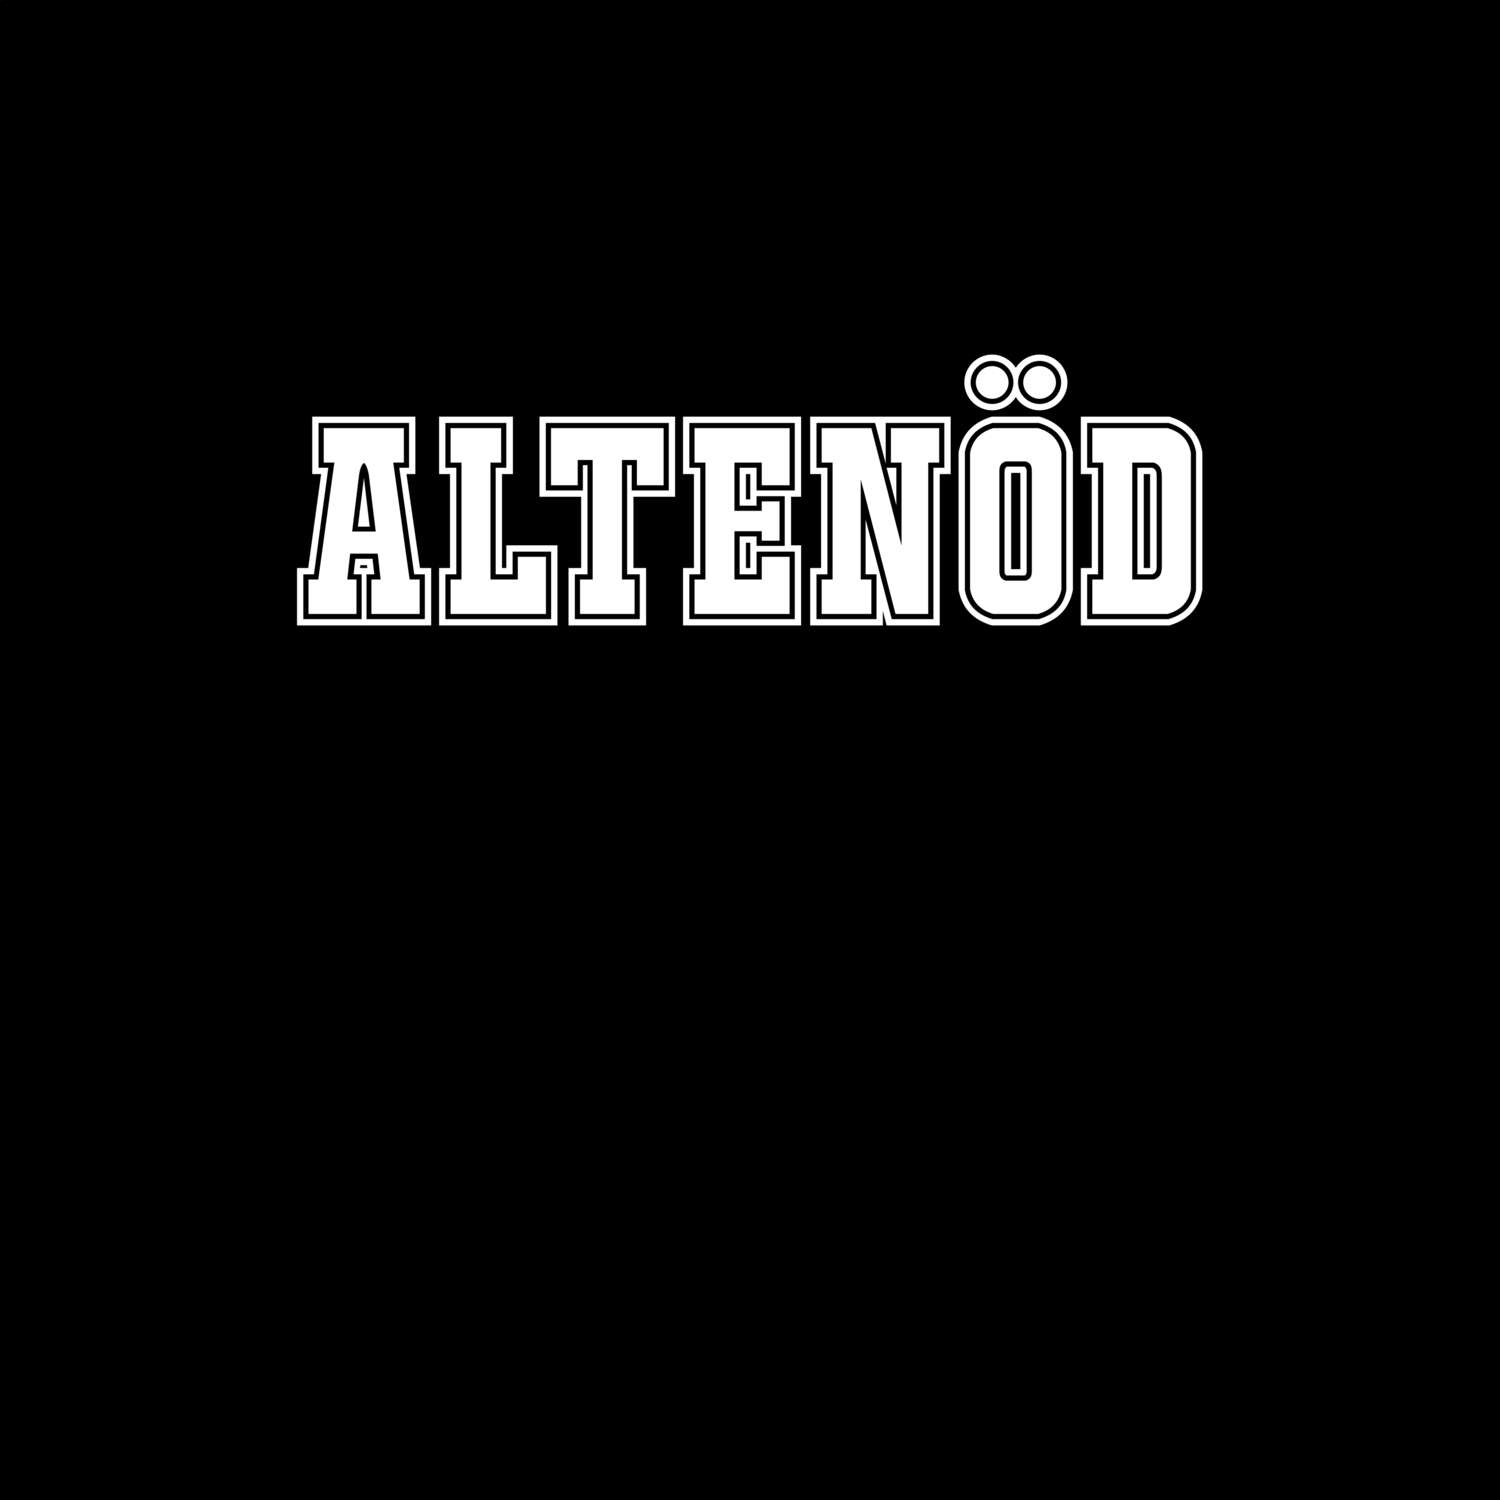 Altenöd T-Shirt »Classic«